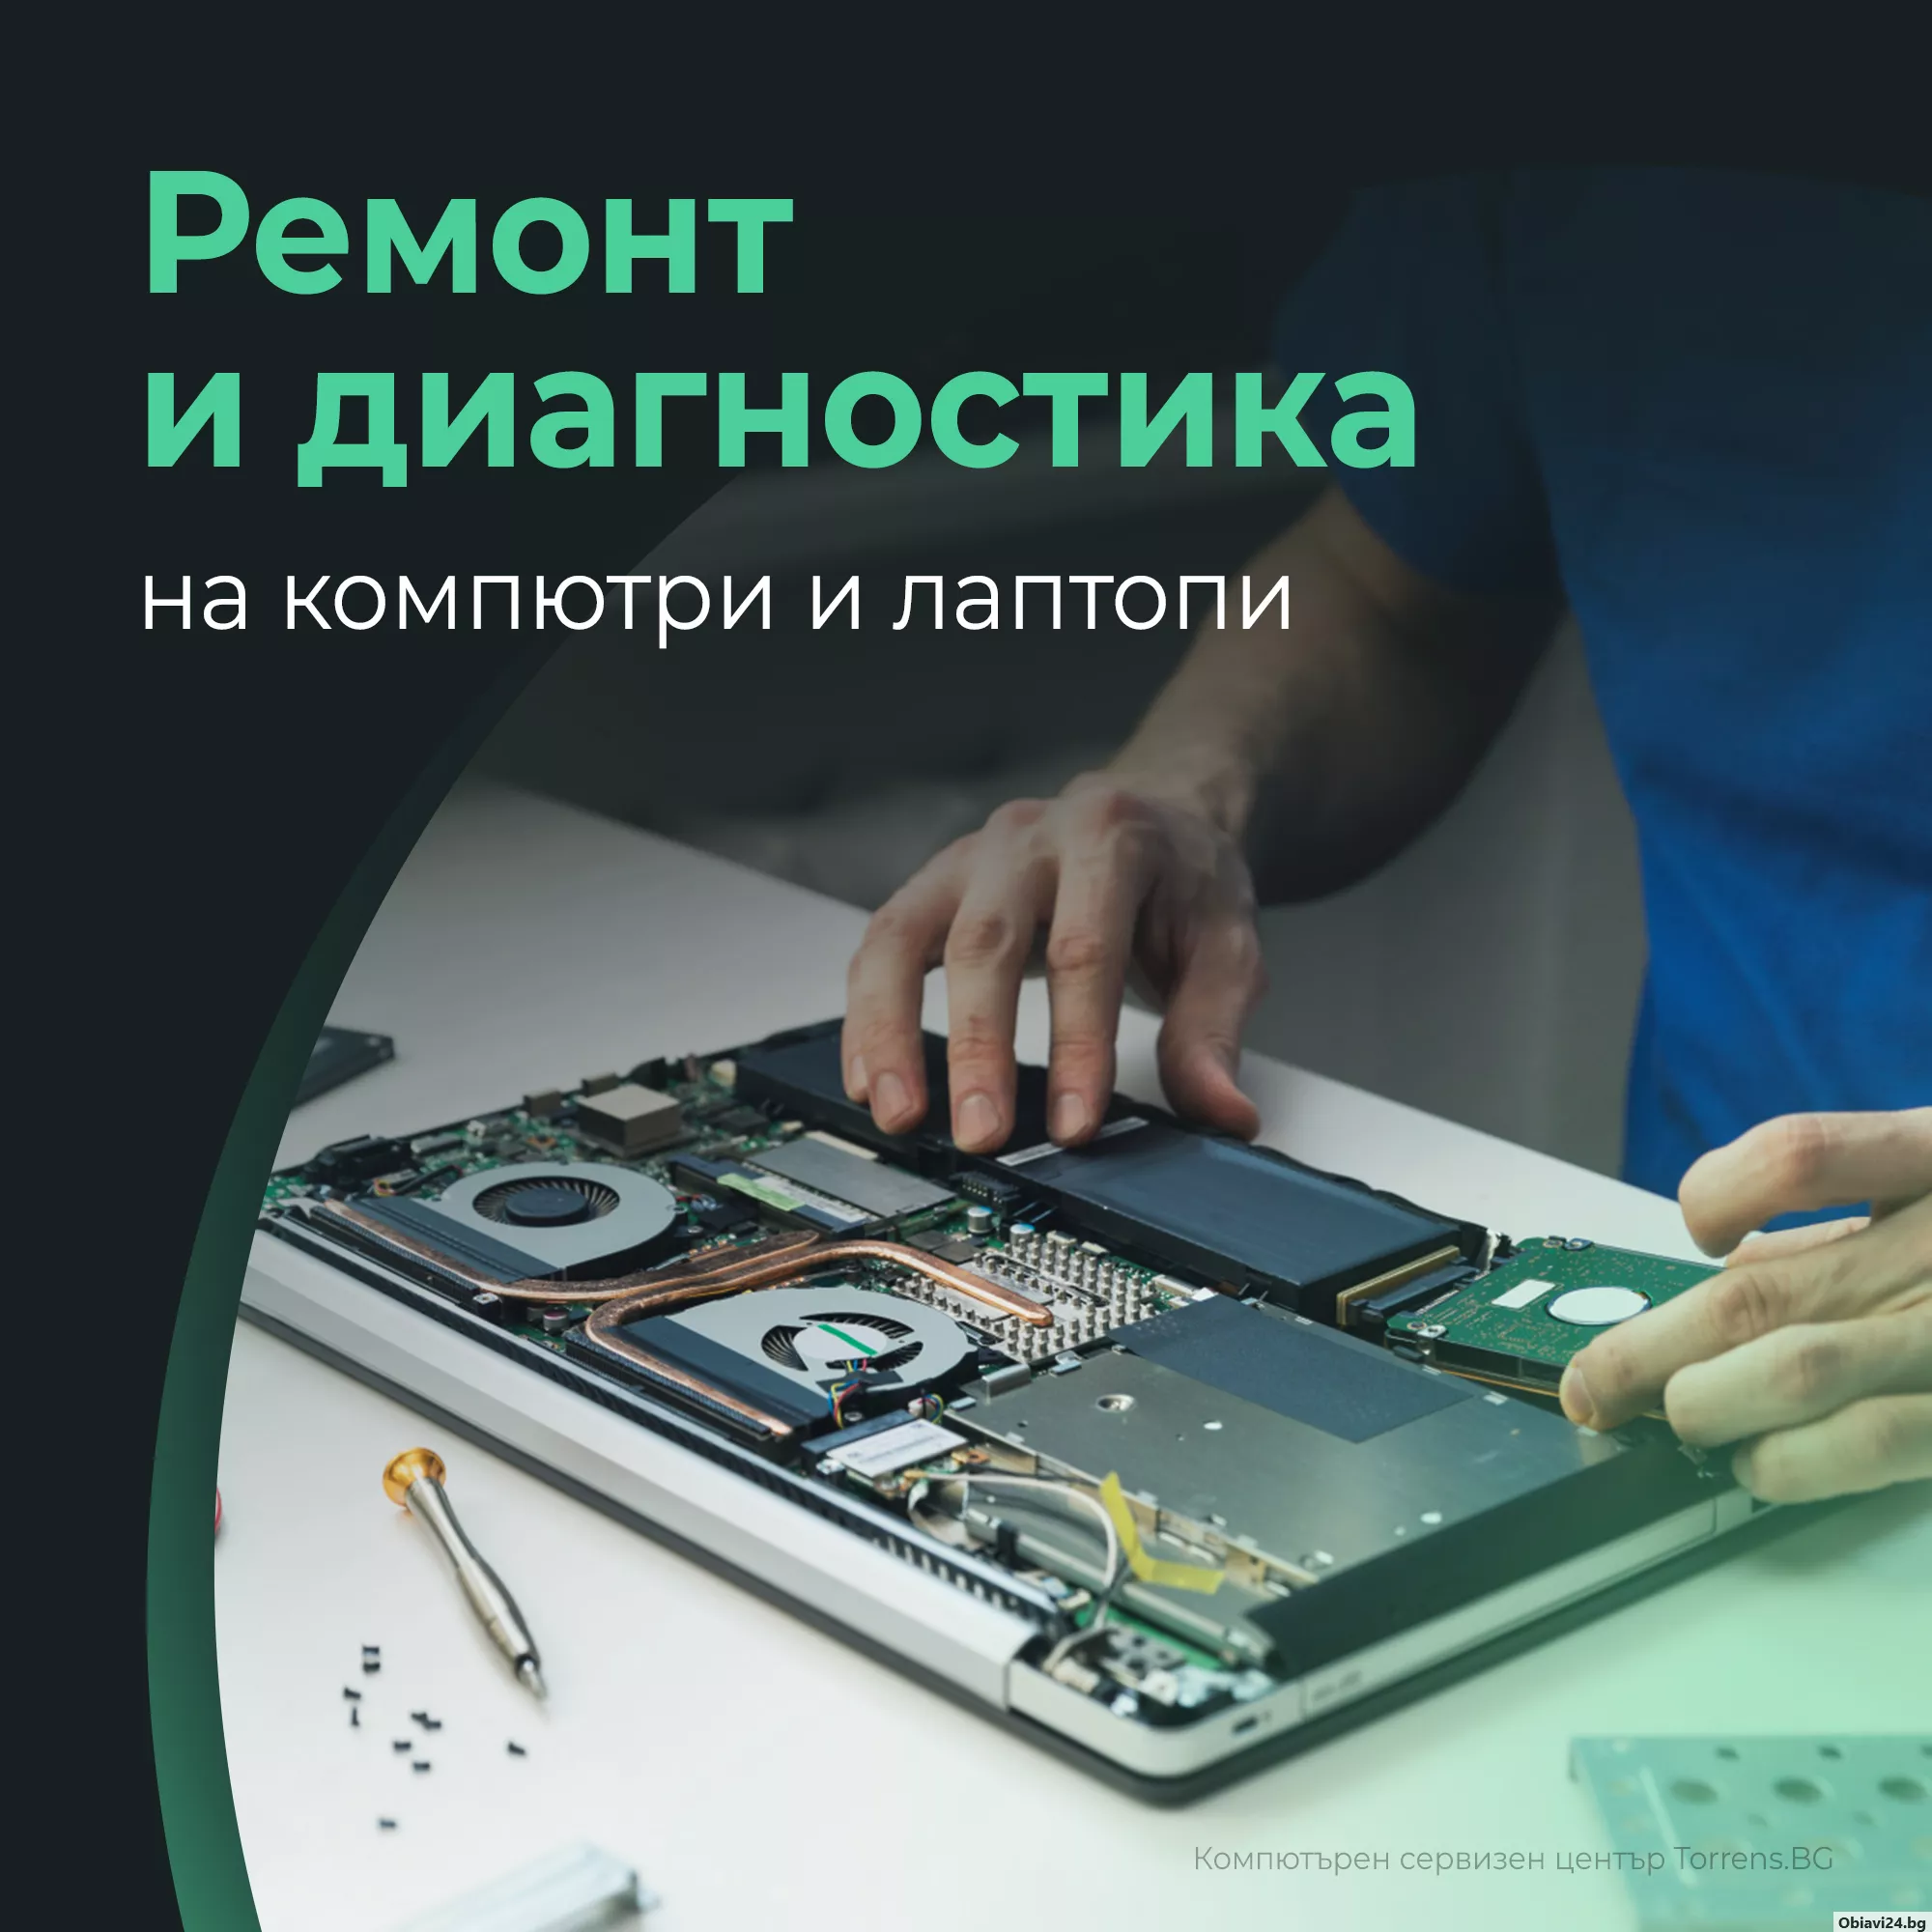 ремонт на компютри и лаптопи - obiavi24.bg